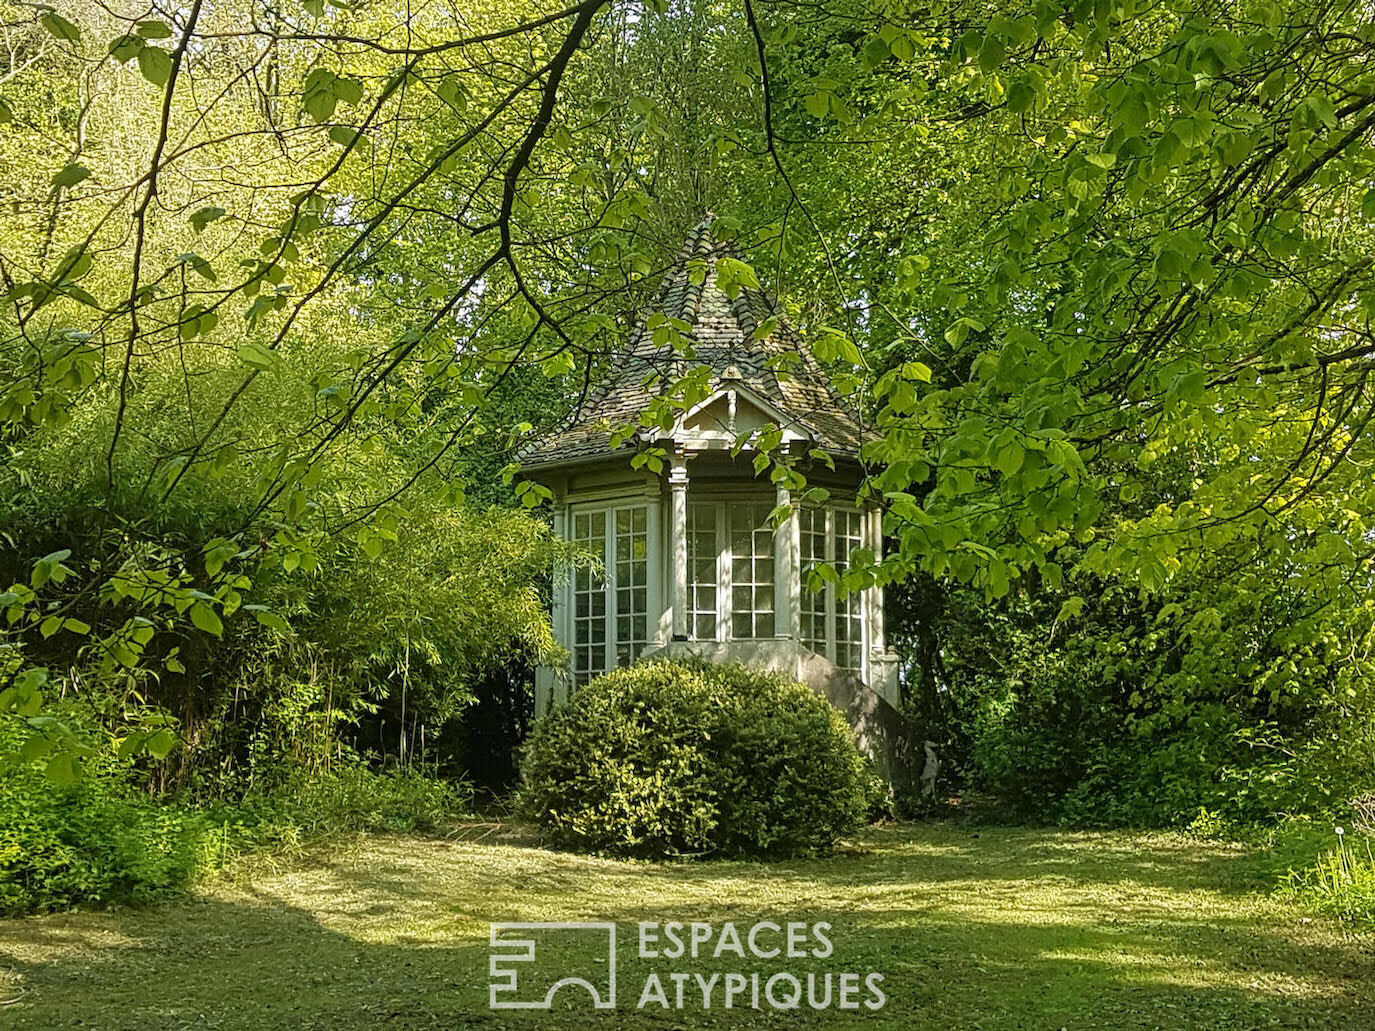 The romantic – Art deco villa and its park